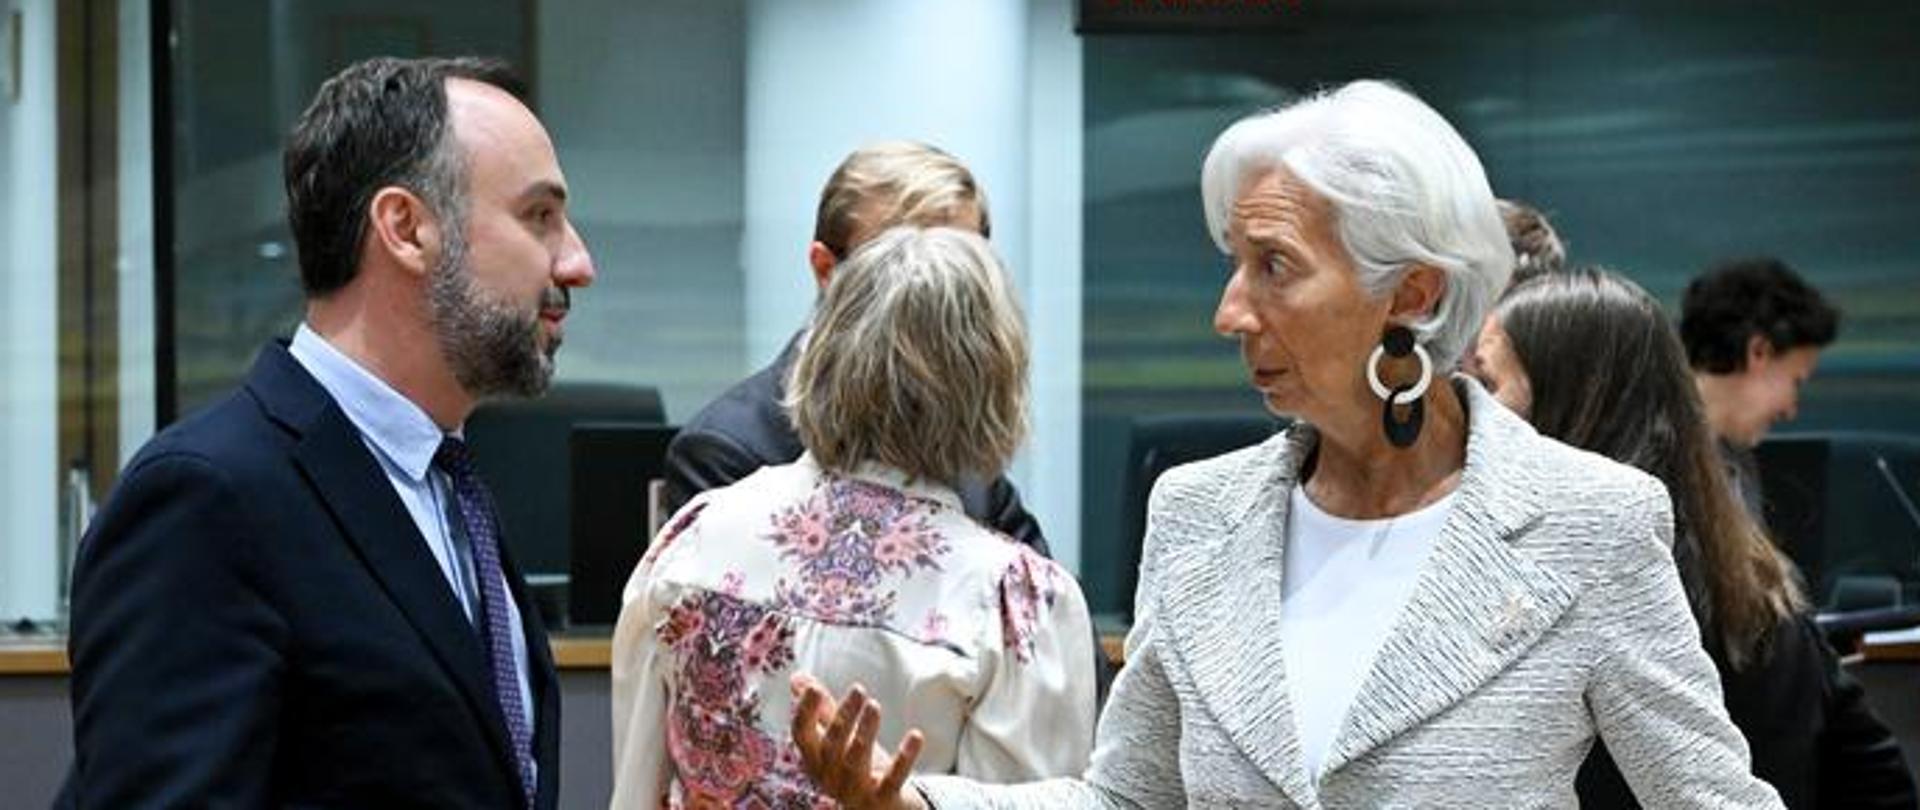 Wiceminister Paweł Karbownik z Prezydent Europejskiego Banku Centralnego Christiną Lagarde